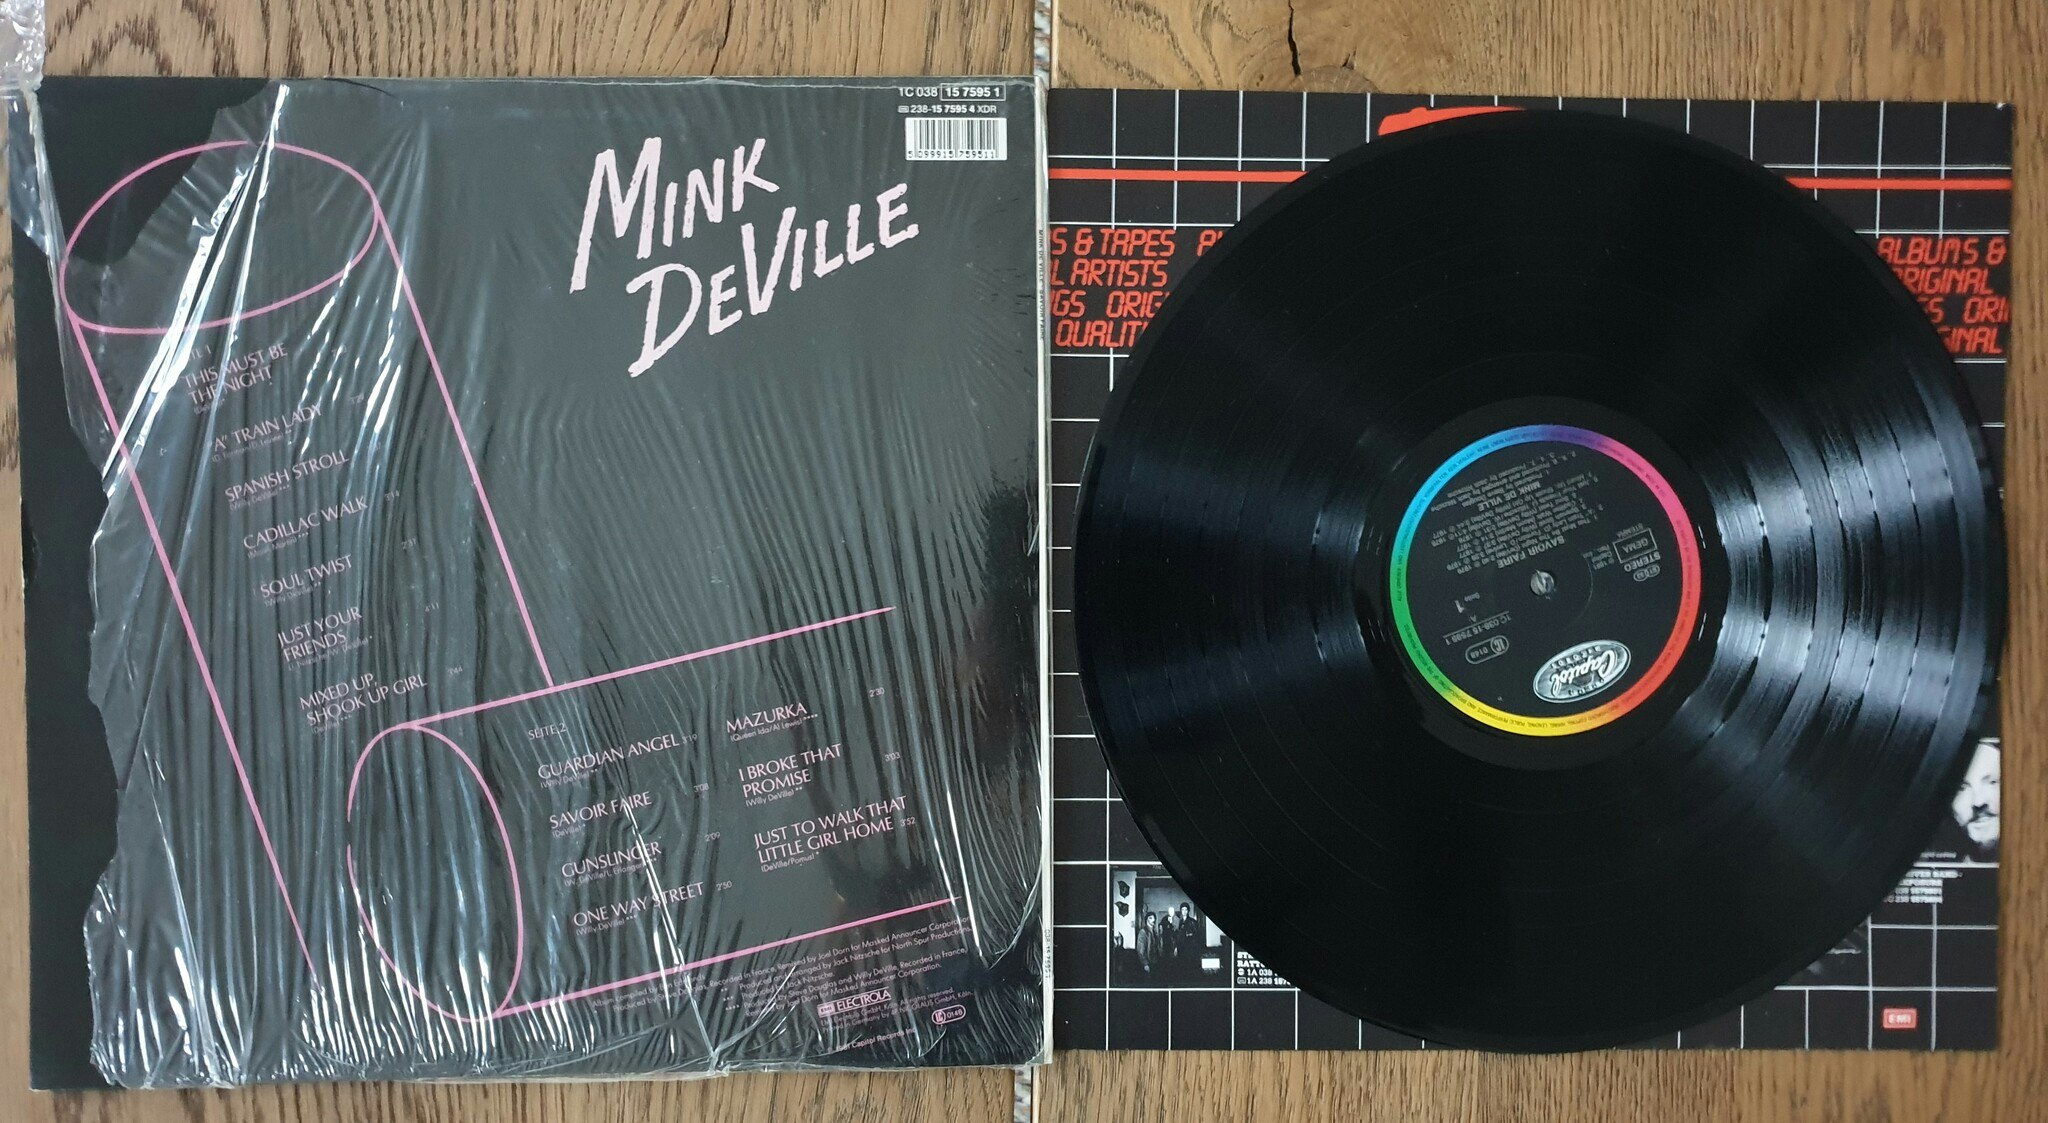 Mink De Ville, Savoir faire. Vinyl LP